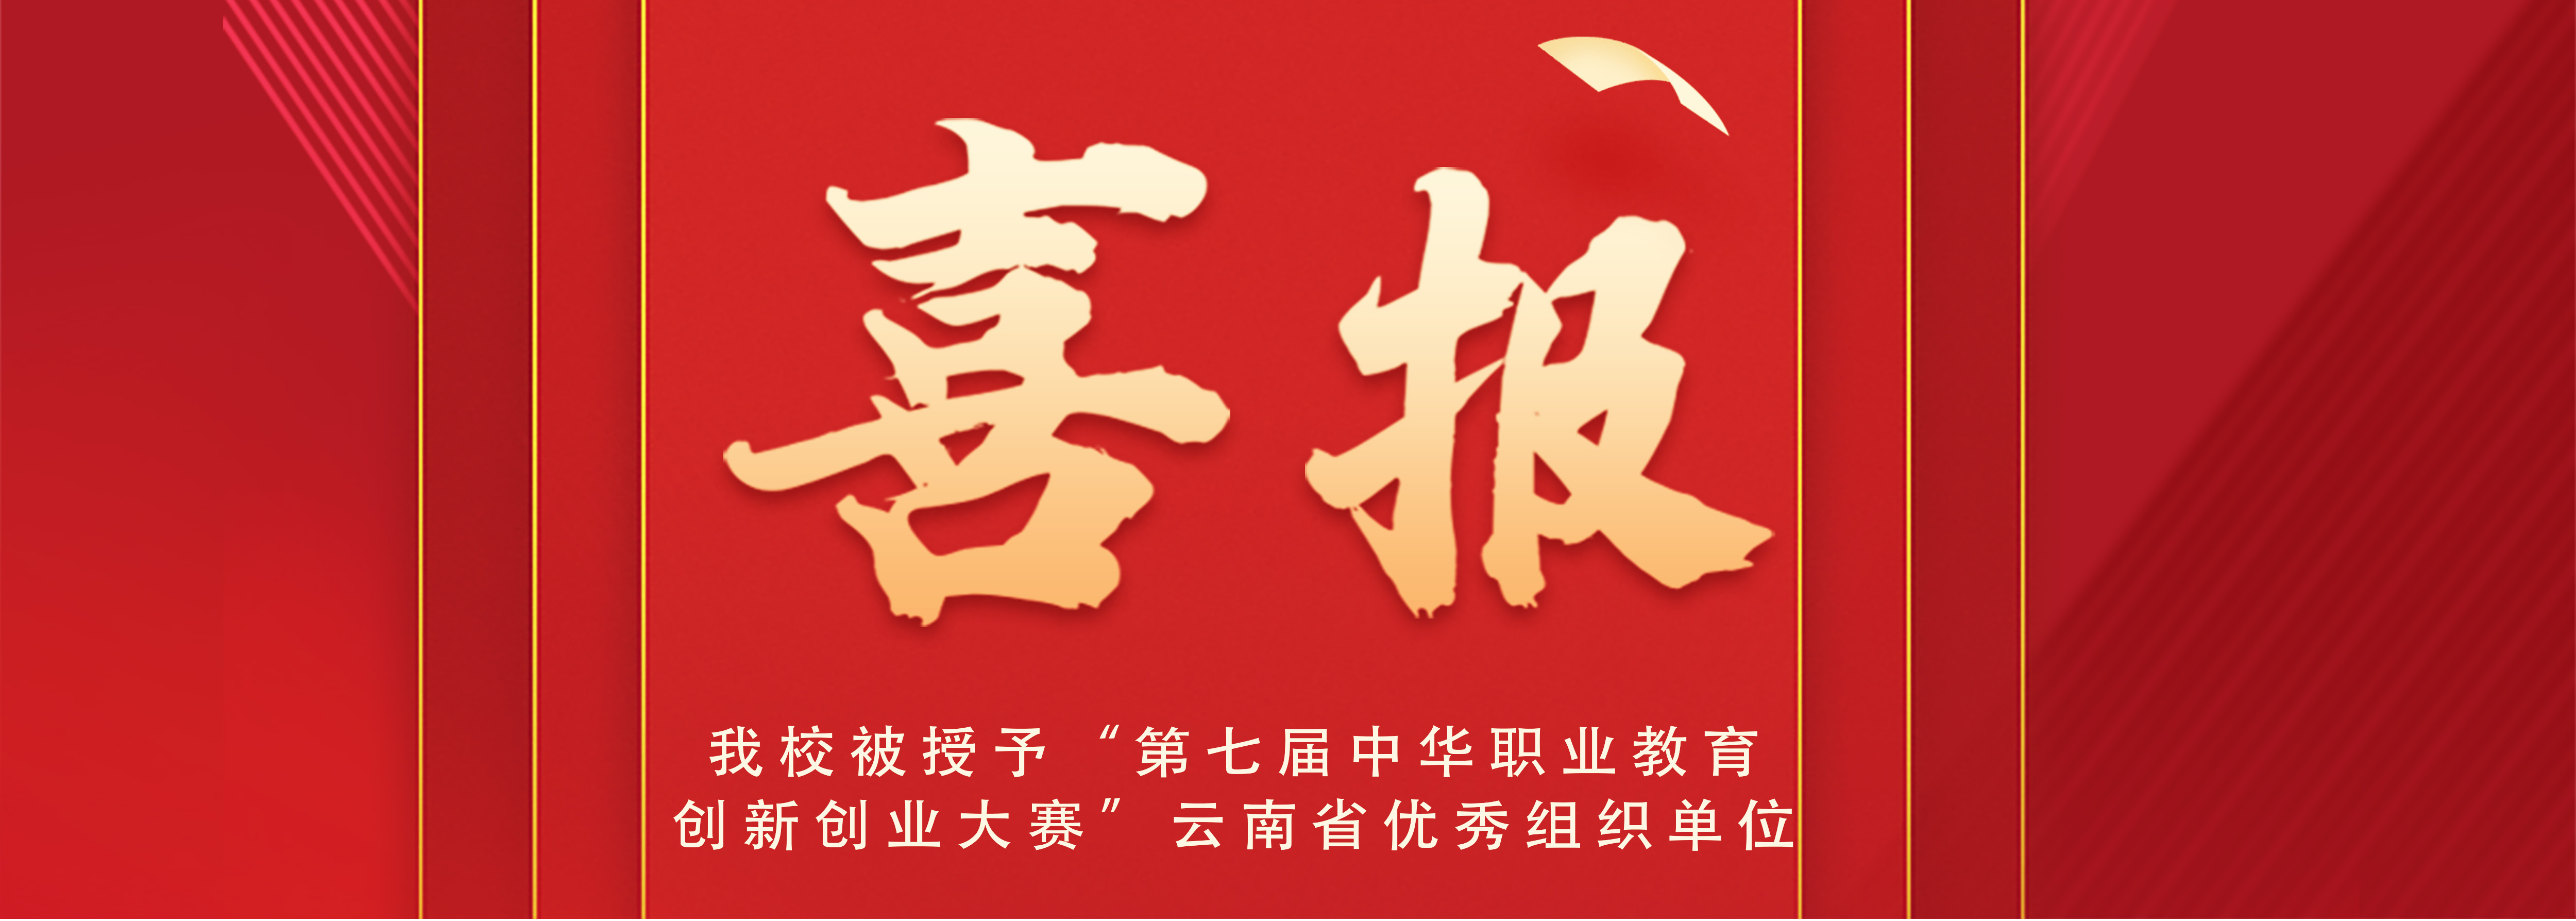 喜讯丨我校被授予“第七届中华职业 教育创新创业大赛”云南省优秀 组织单位